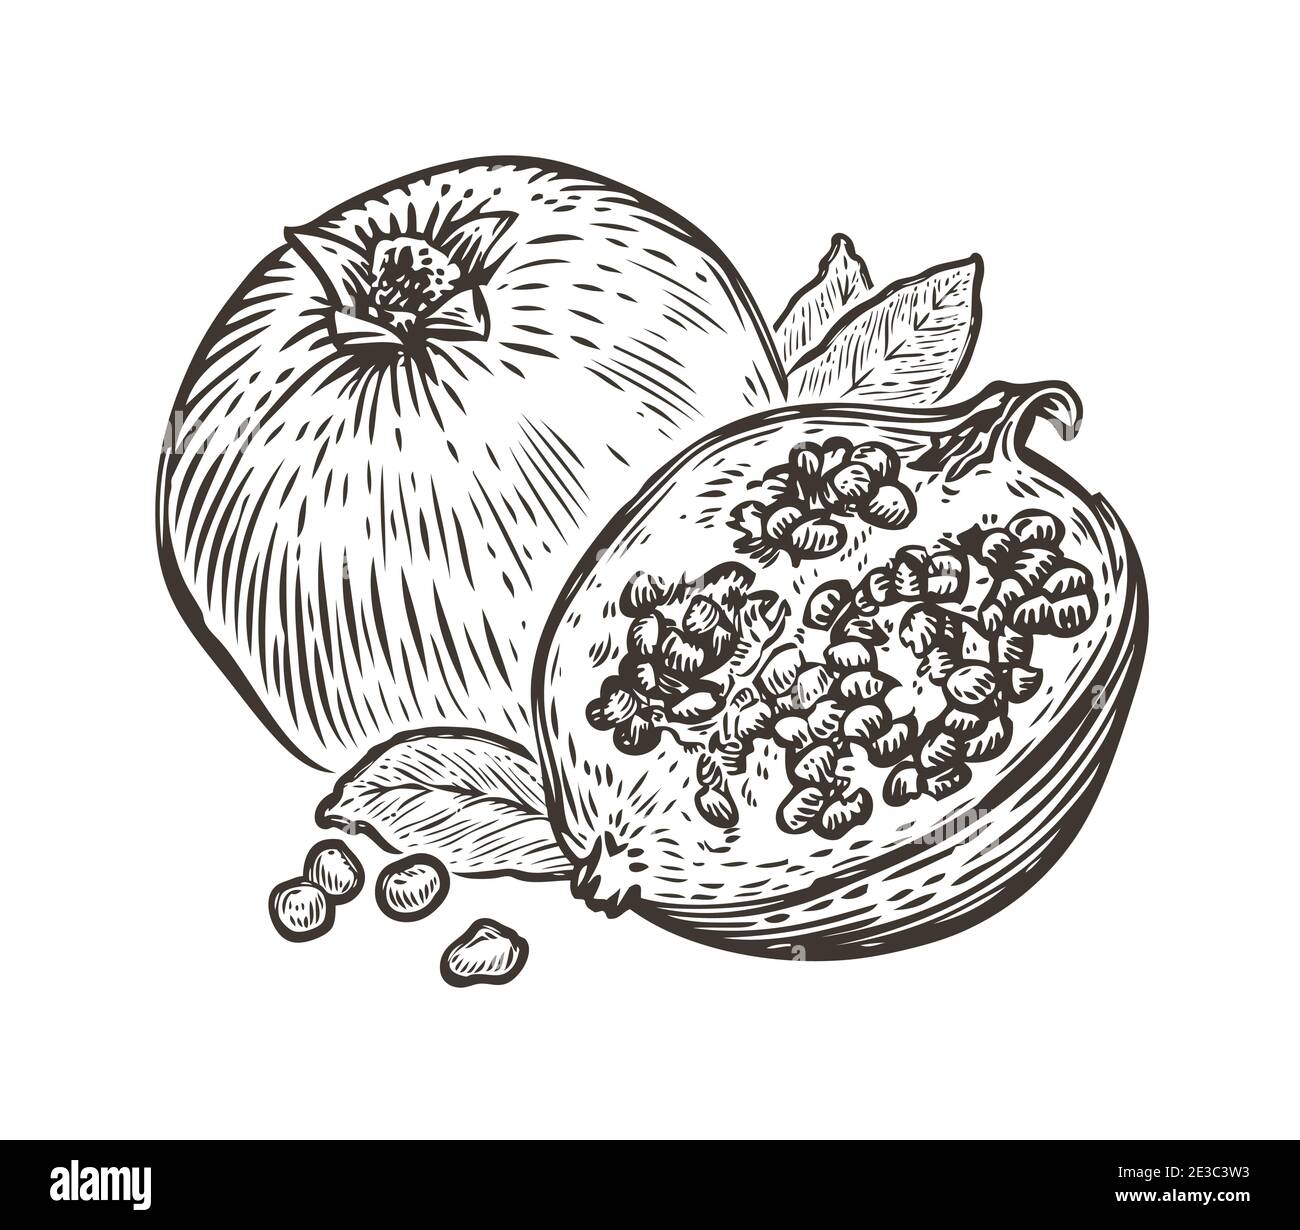 Granatapfelfrucht. Bio-Ernährung gesunde Ernährung. Handgezeichnete Vintage-Skizze mit Gravur Stock Vektor